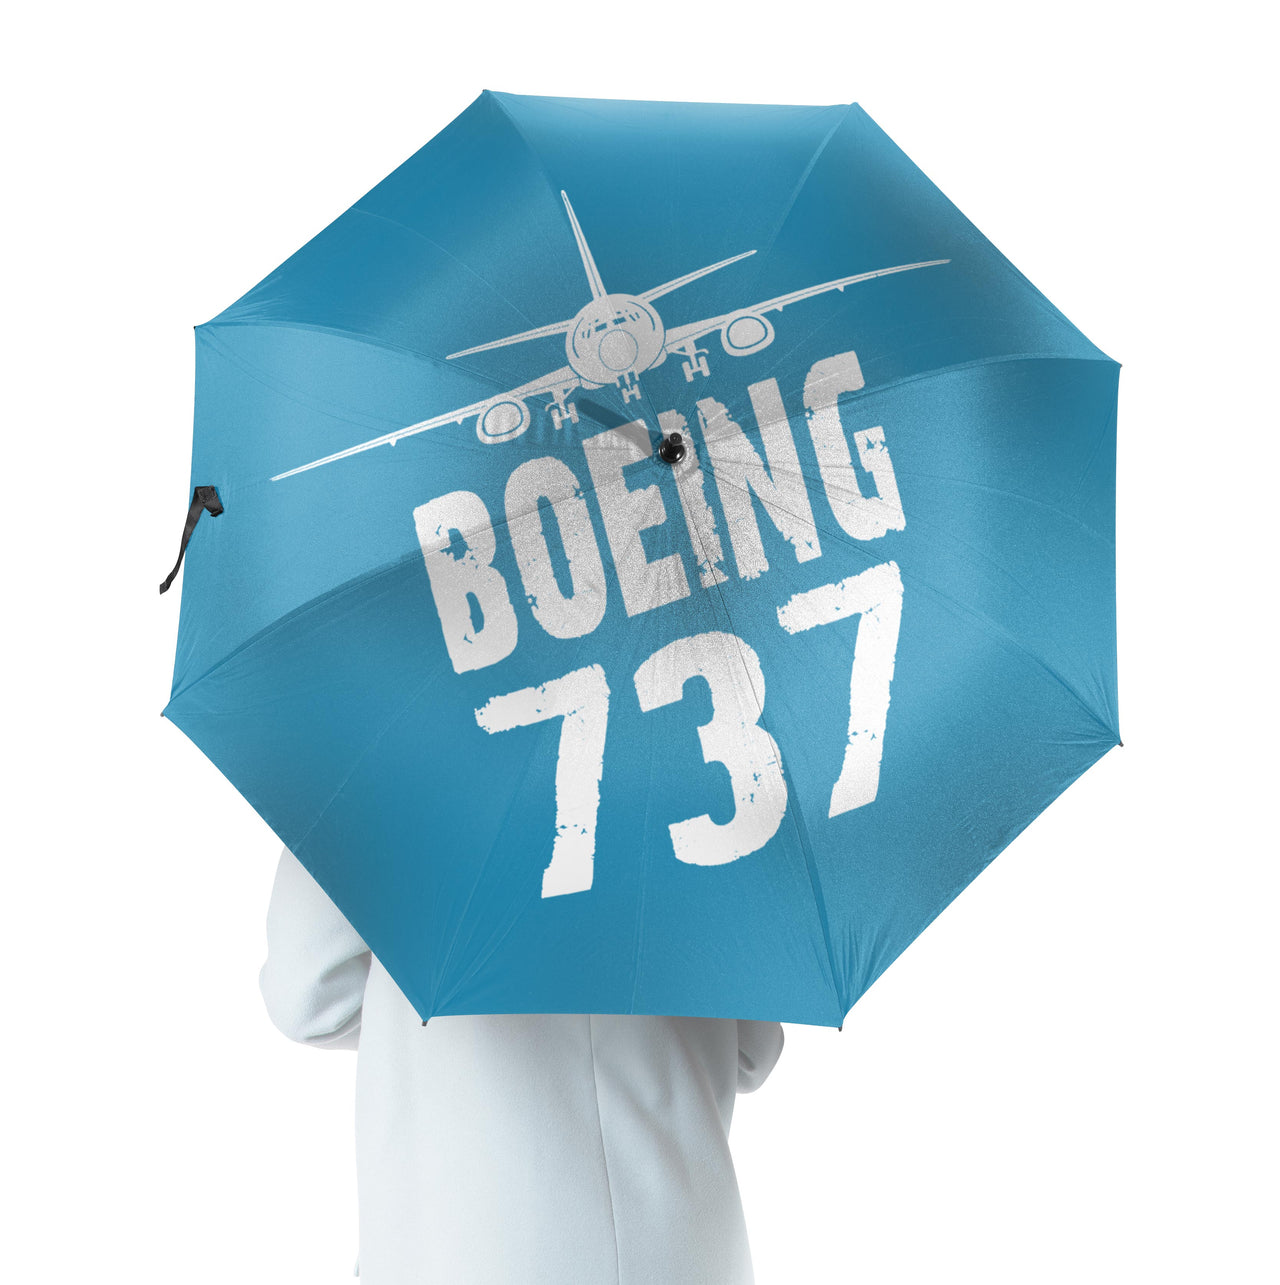 Boeing 737 & Plane Designed Umbrella